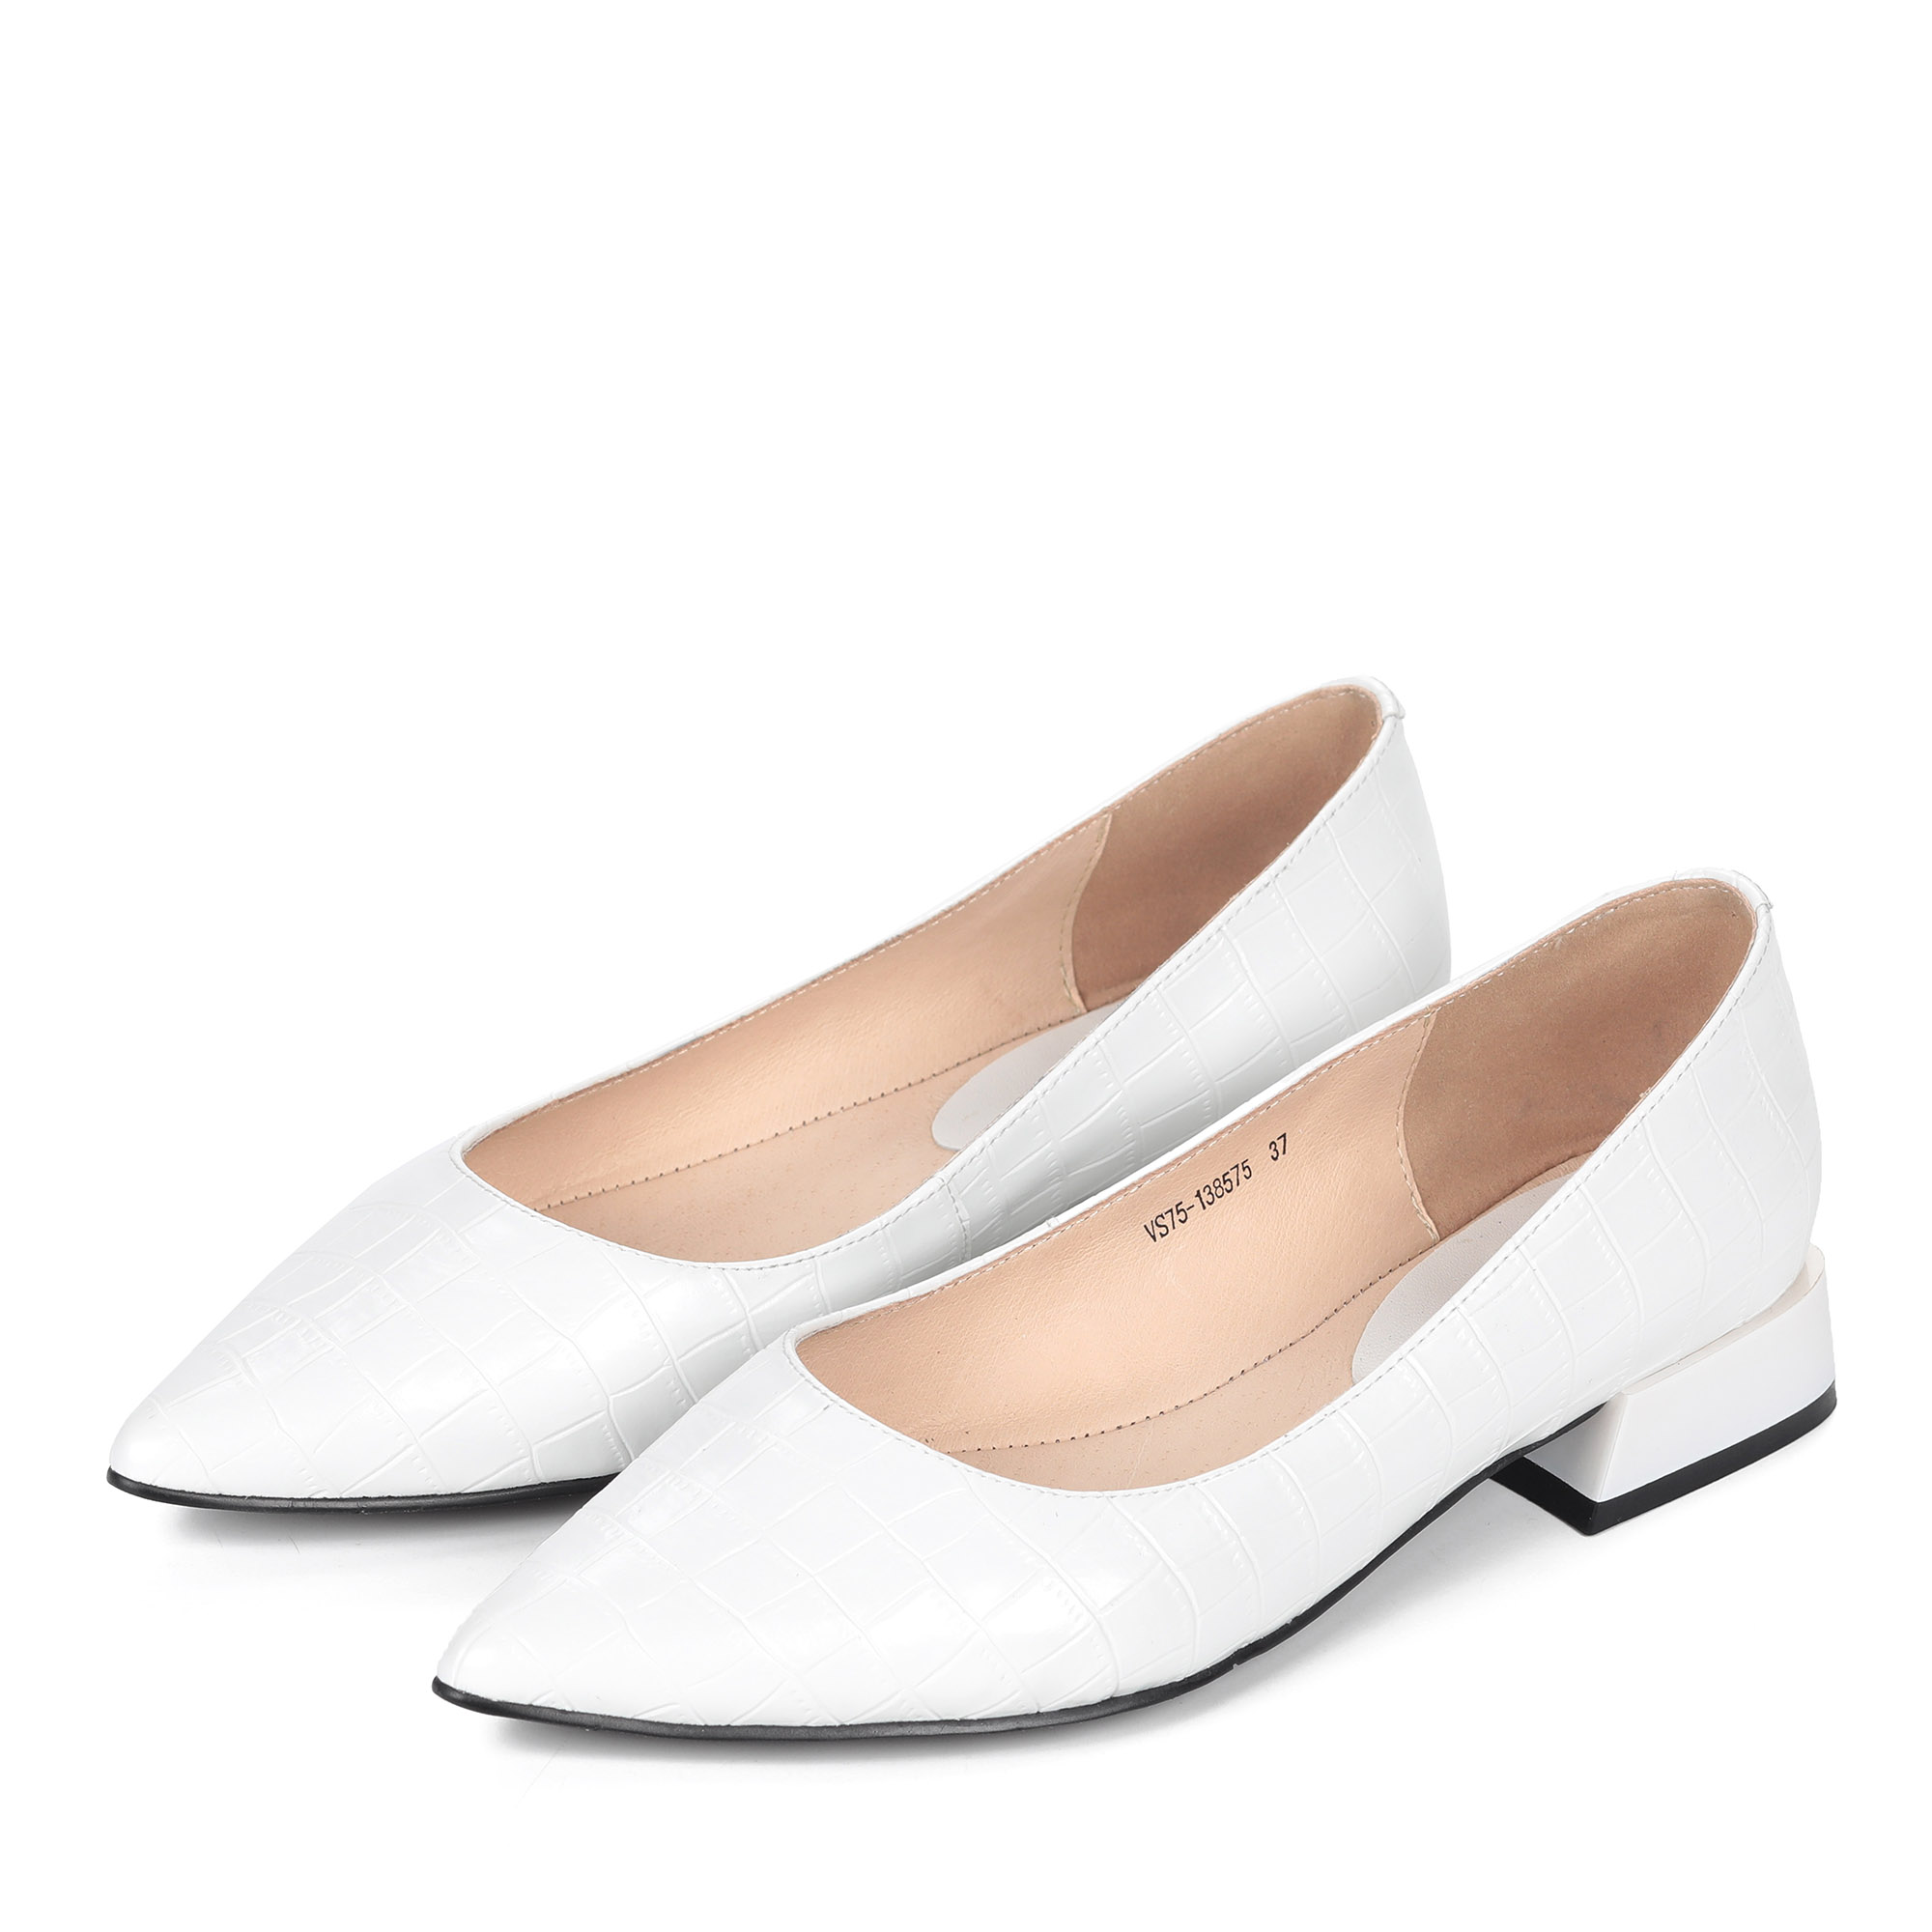 Белые туфли из кожи на небольшом каблуке от Respect-shoes